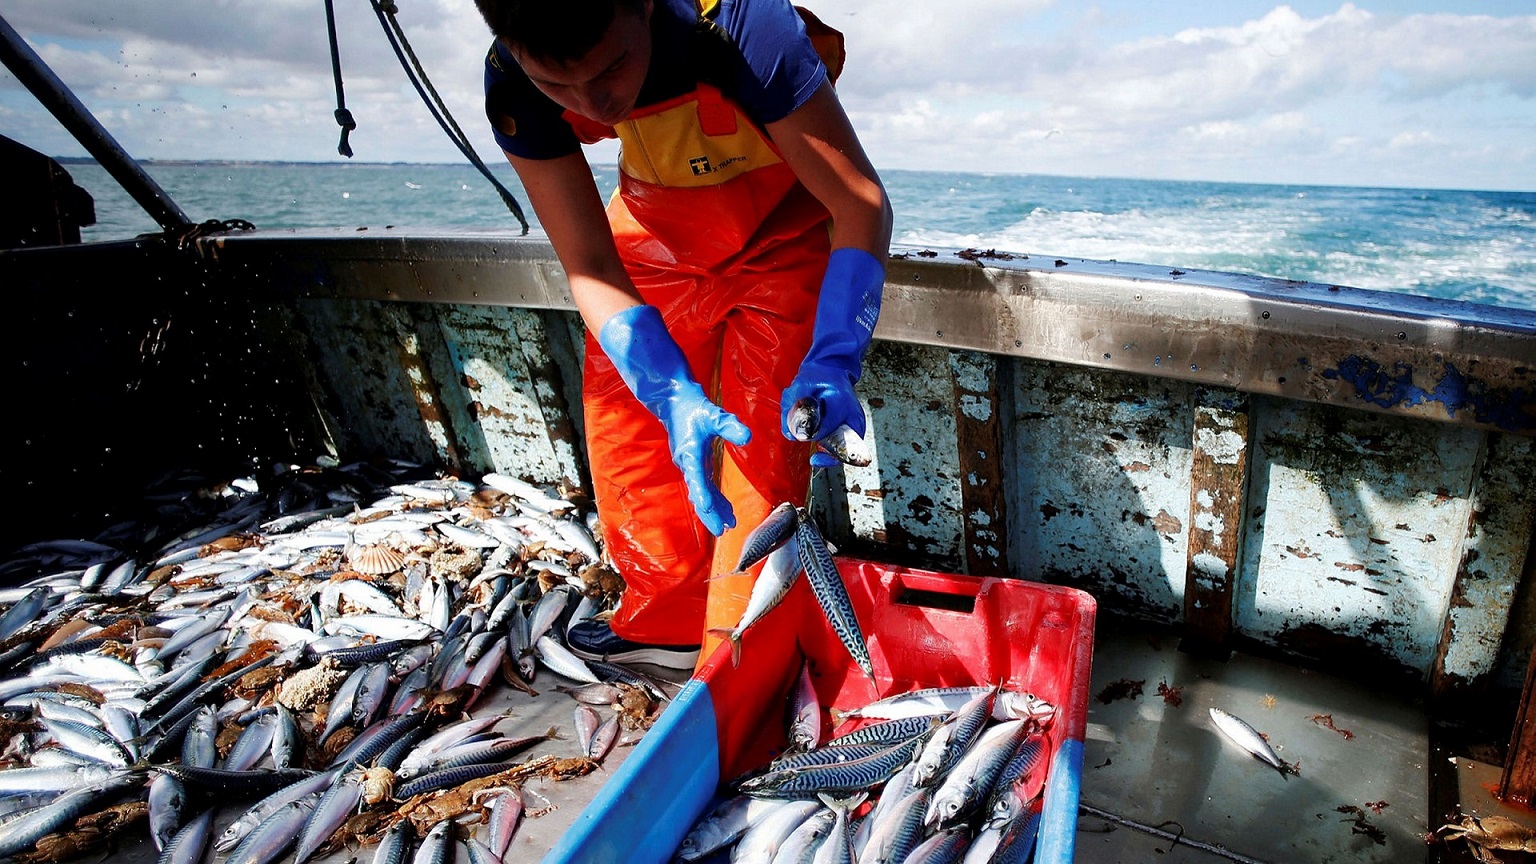 Châu Âu cần tăng cường chống đánh bắt cá trái phép